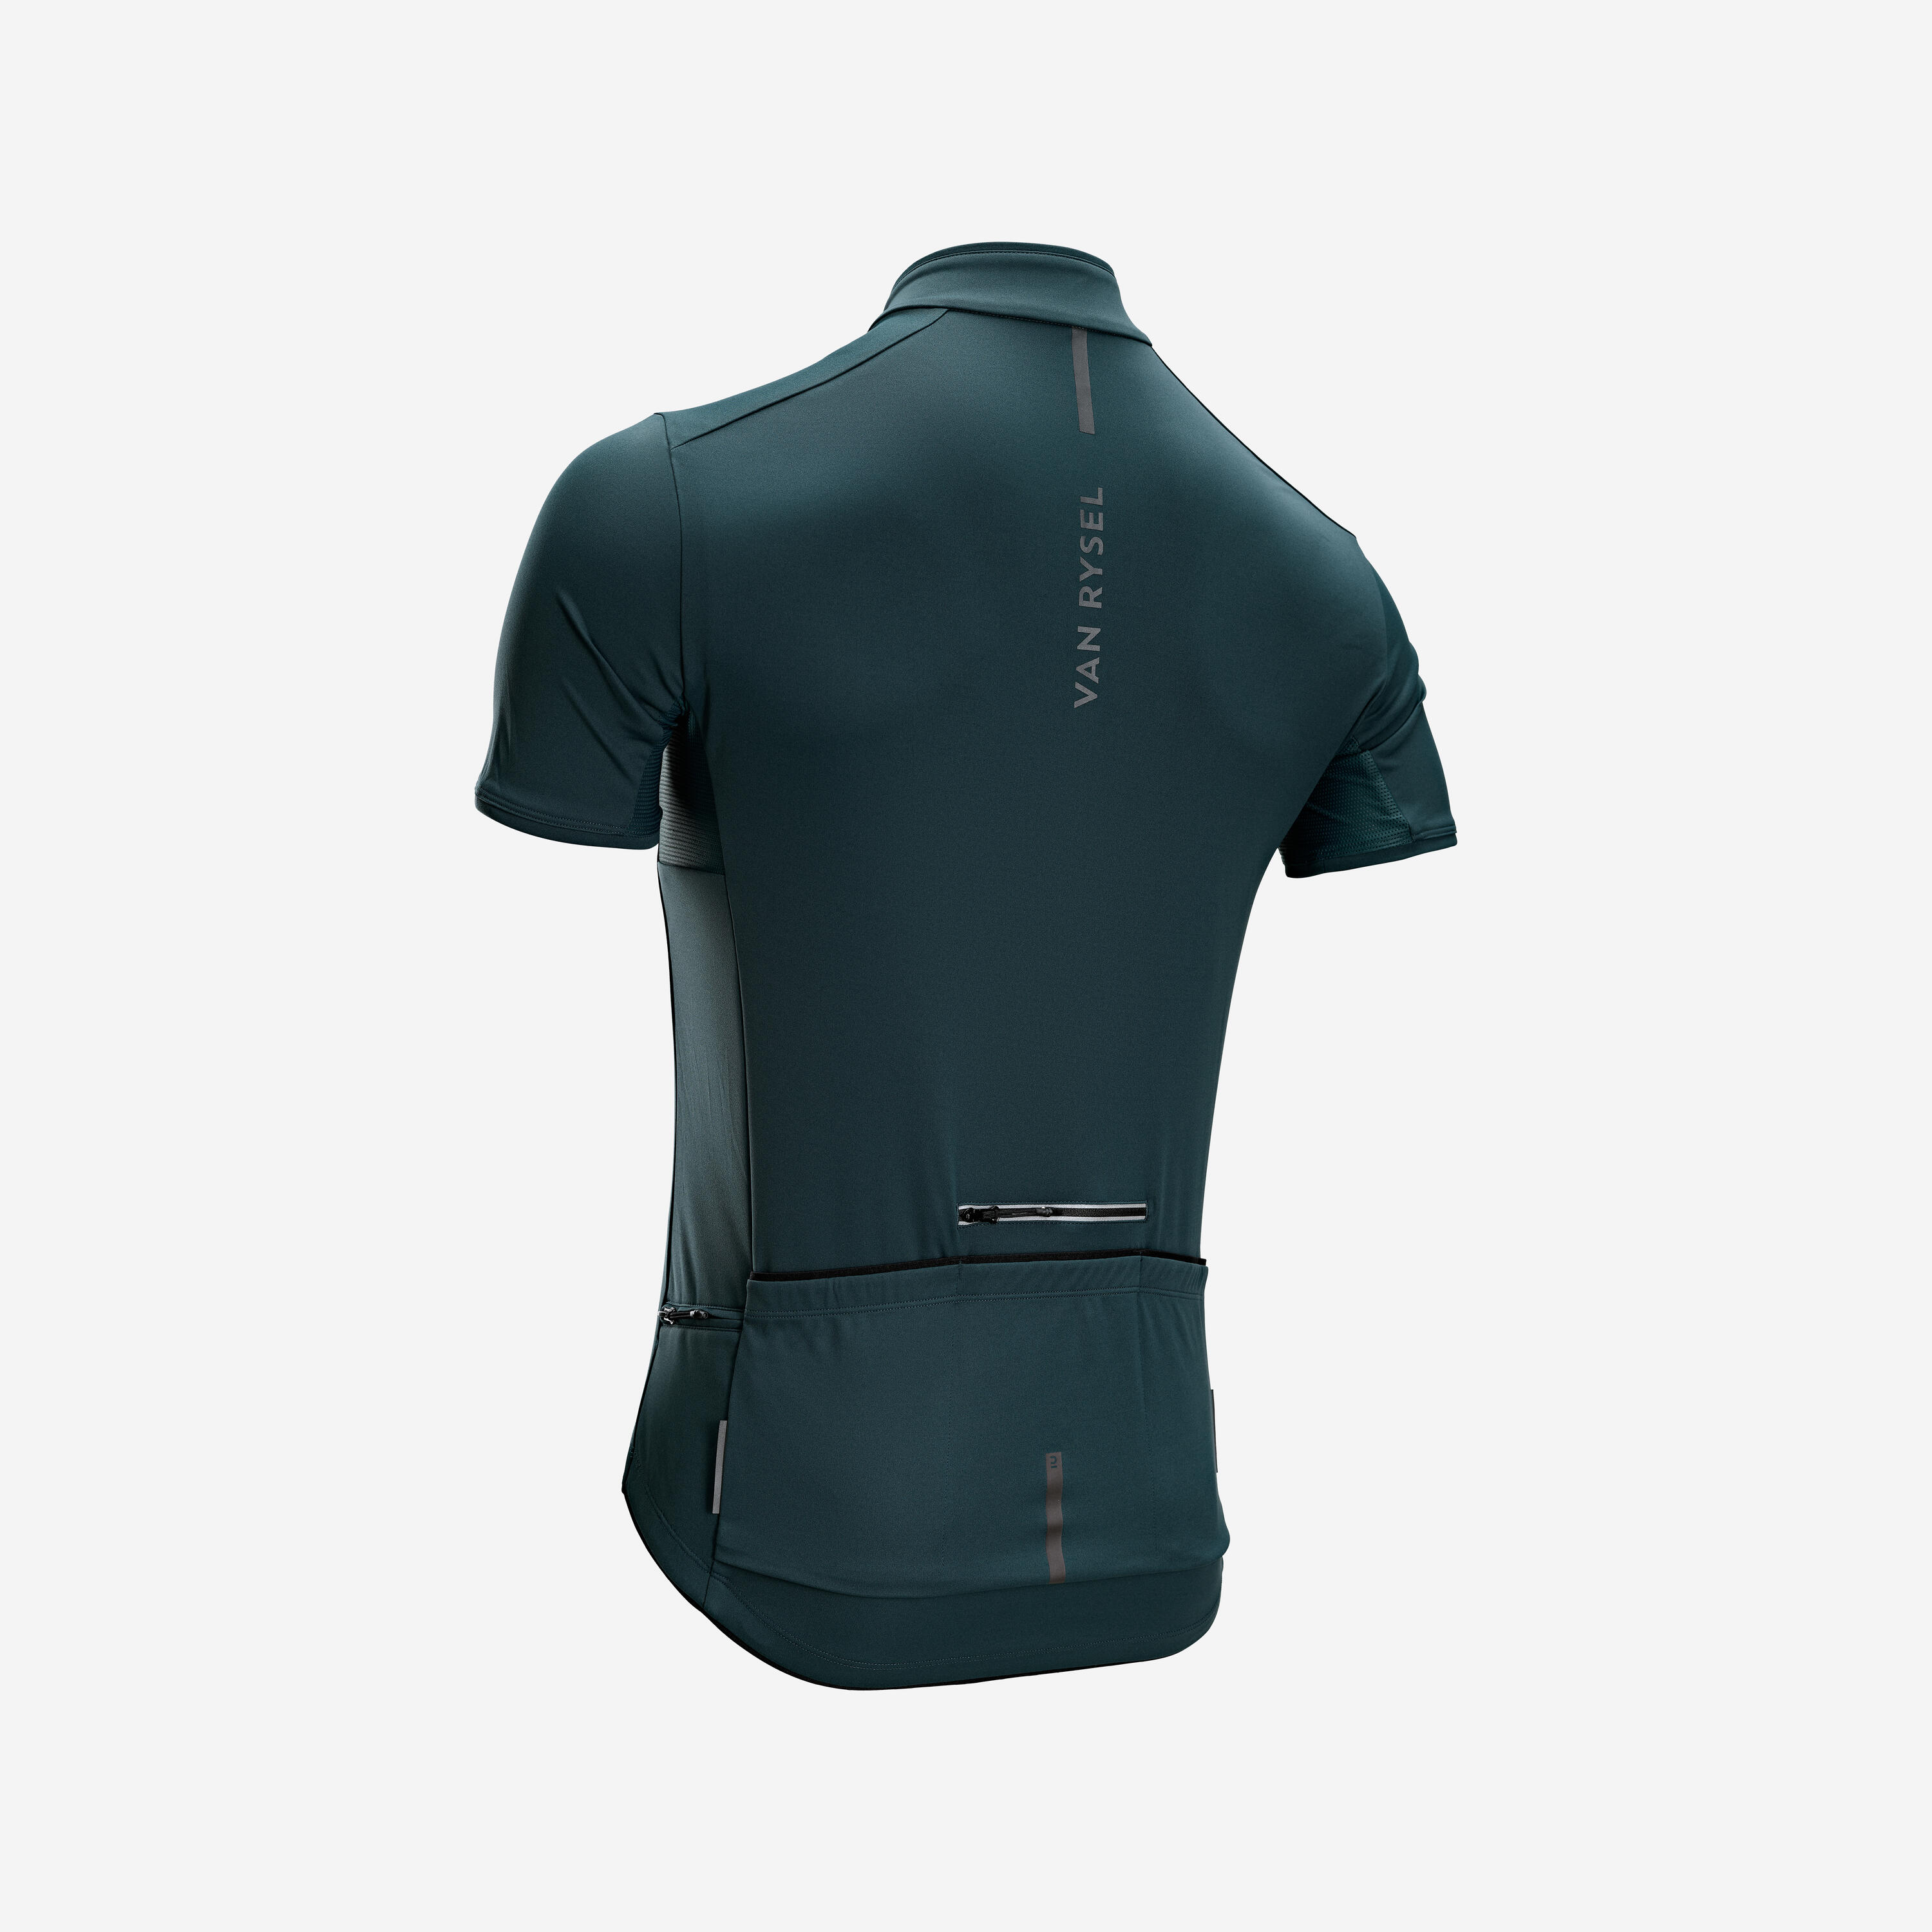 Men's Road Cycling Short-Sleeved Summer Jersey Endurance - Emerald Green 3/6